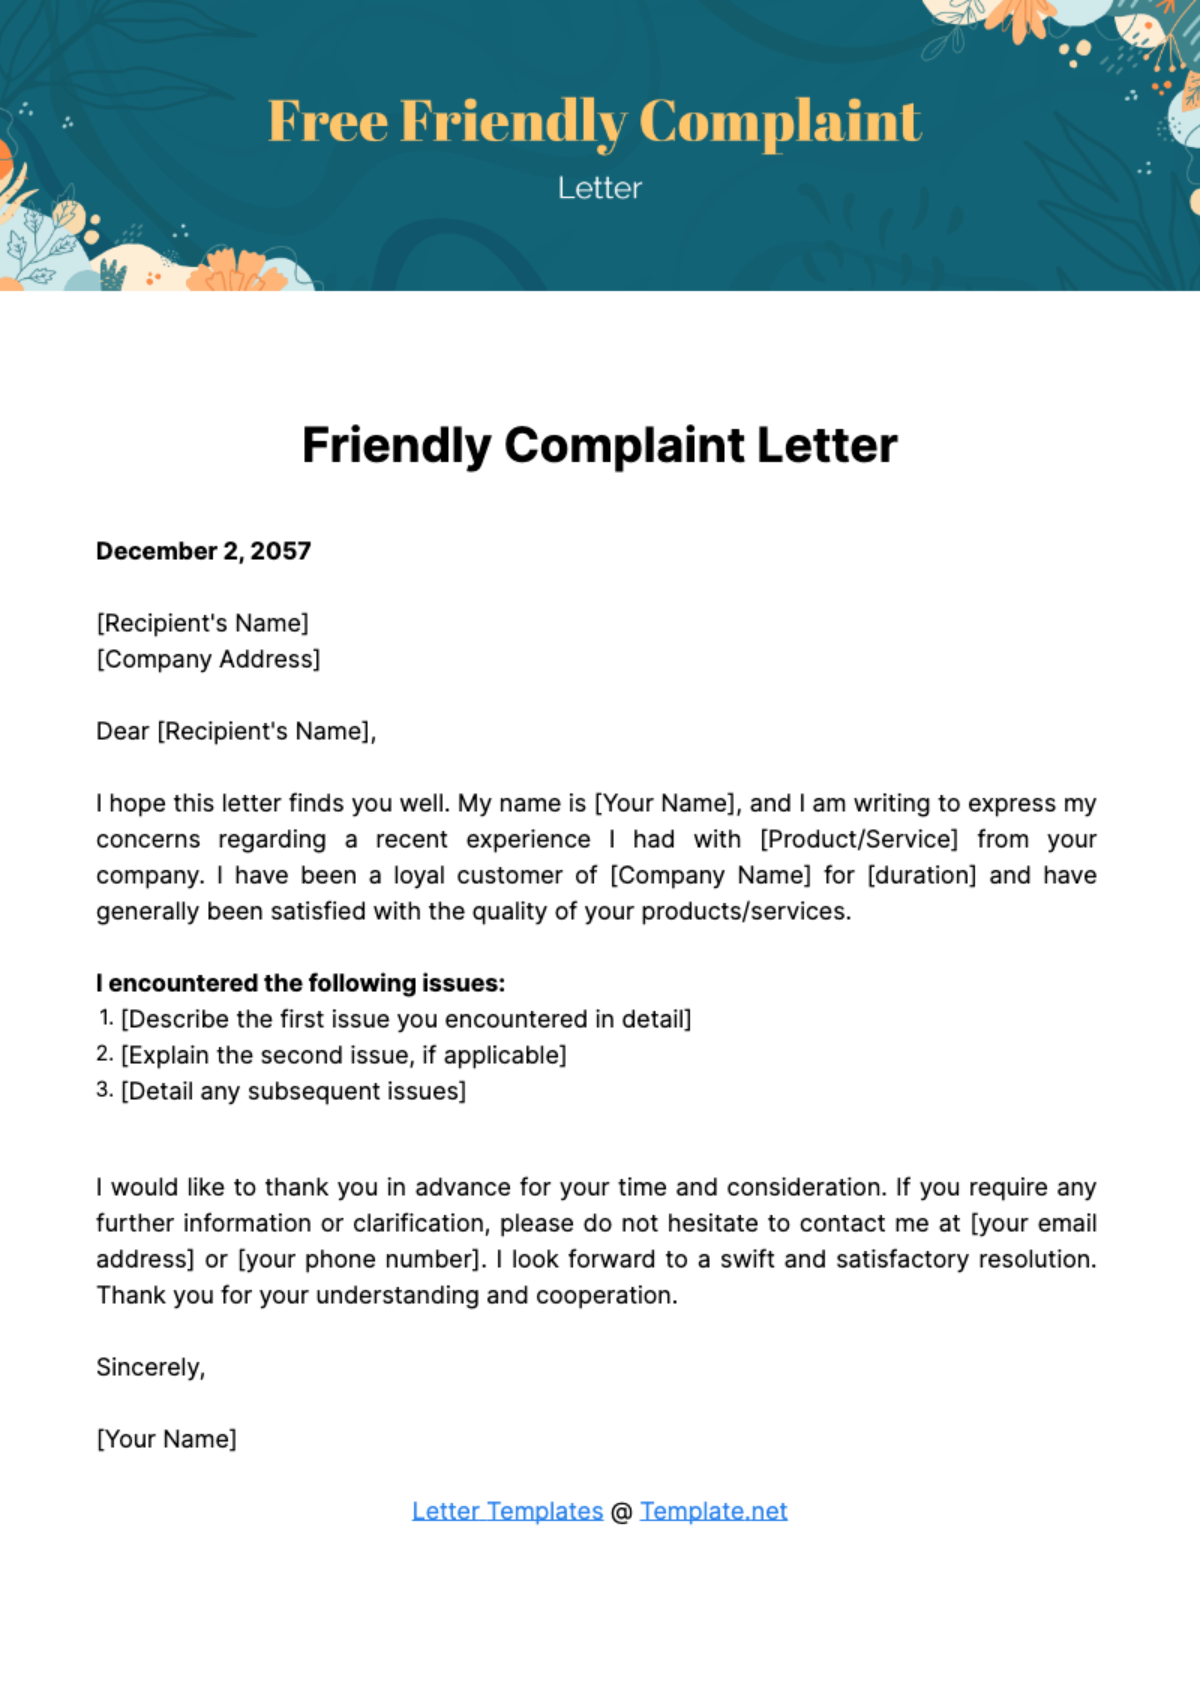 Friendly Complaint Letter Template